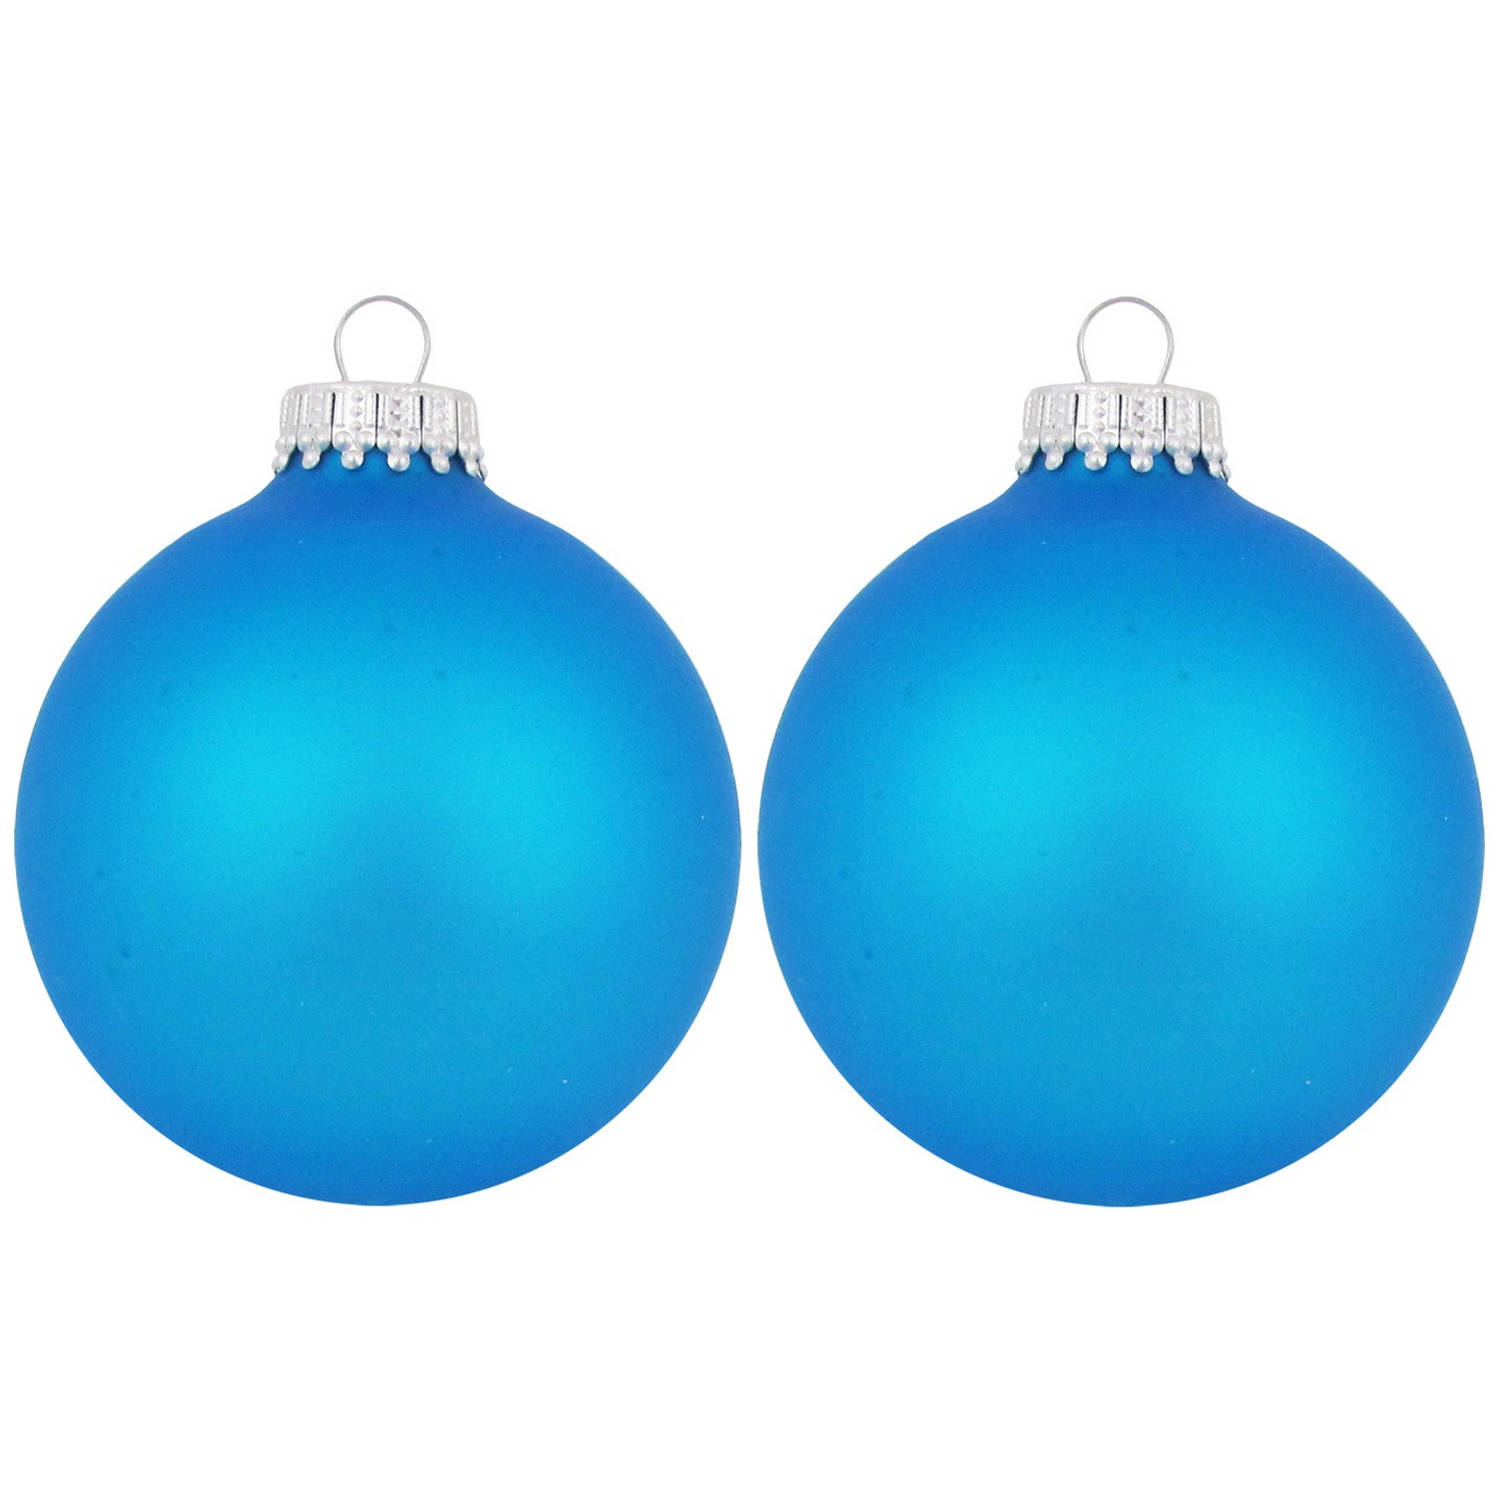 16x Intens Blauwe Glazen Kerstballen Mat 7 Cm Kerstboomversiering Kerstversiering-kerstdecoratie Bla